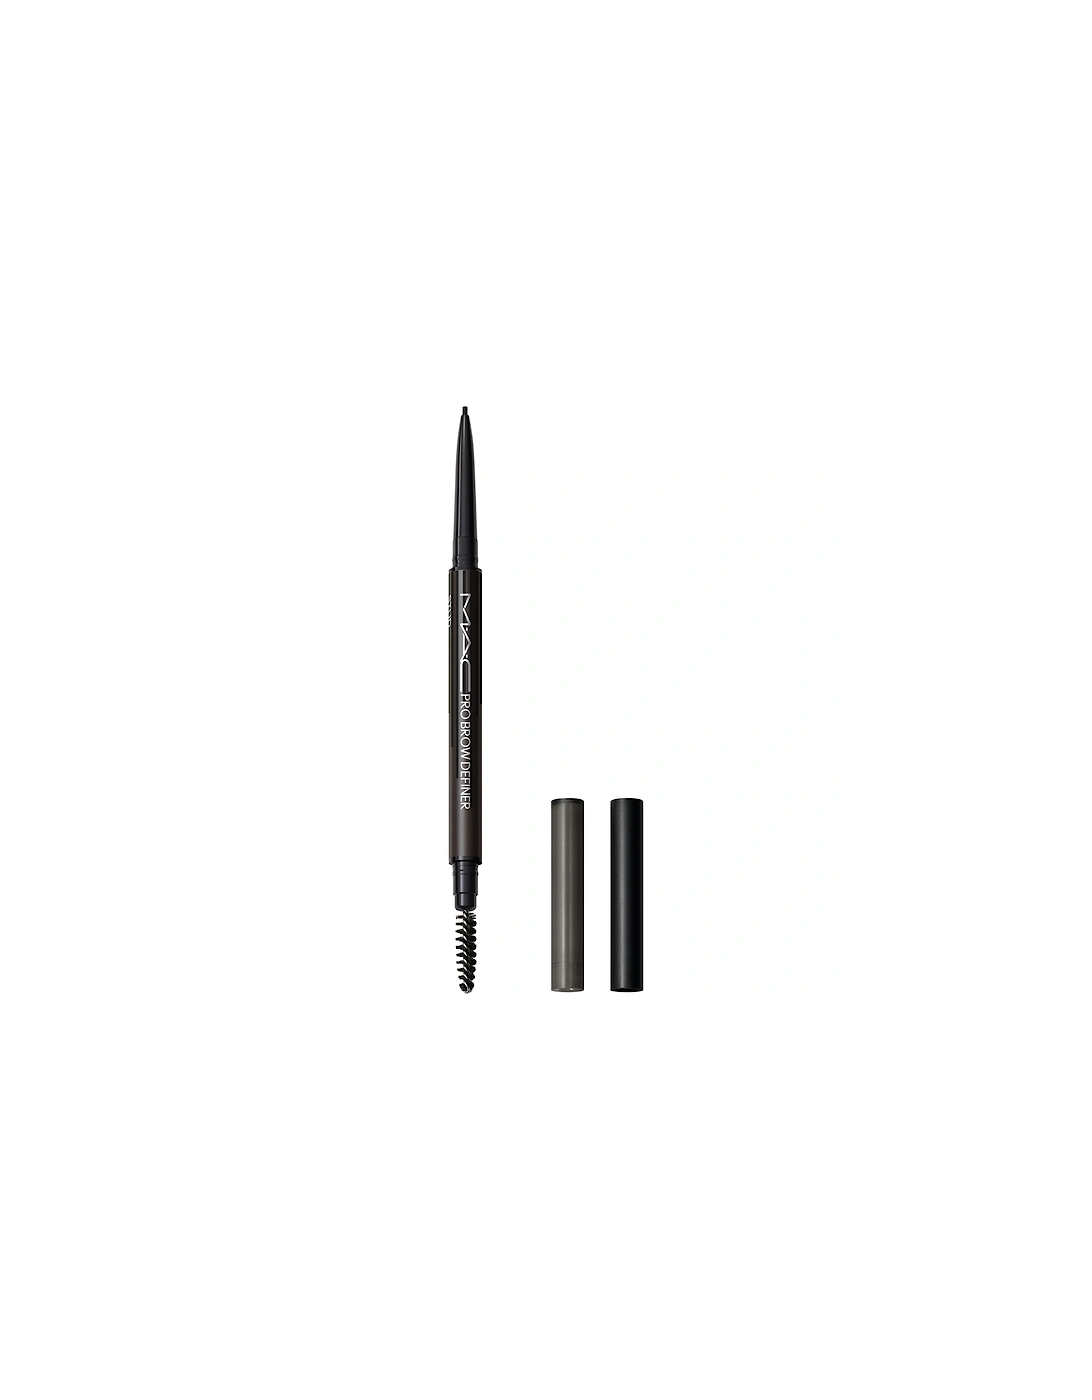 Pro Brow Definer 1mm-Tip Brow Pencil - Stud, 2 of 1